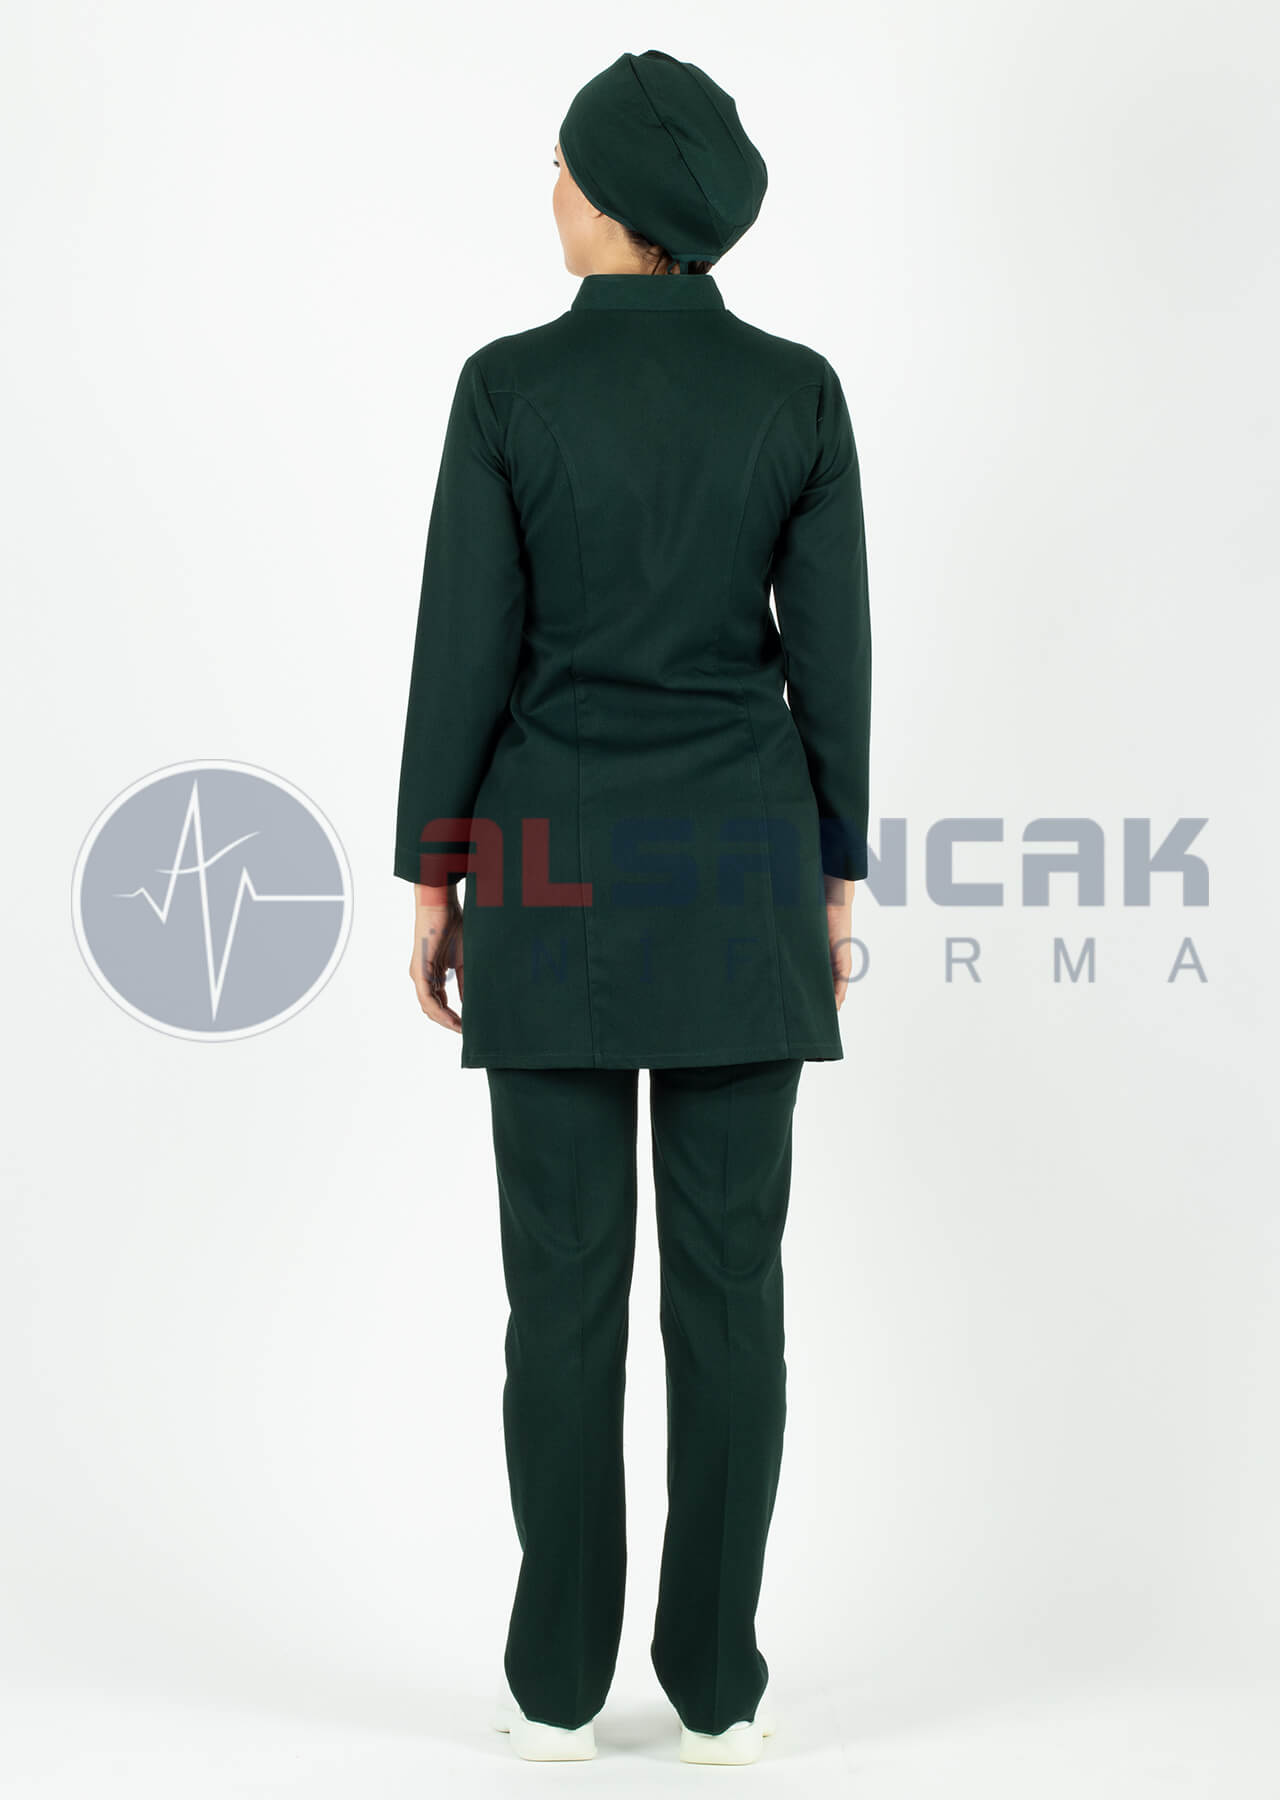 Tesettür Luxe Model Ördekbaşı Hemşire ve Doktor Forması Takımı